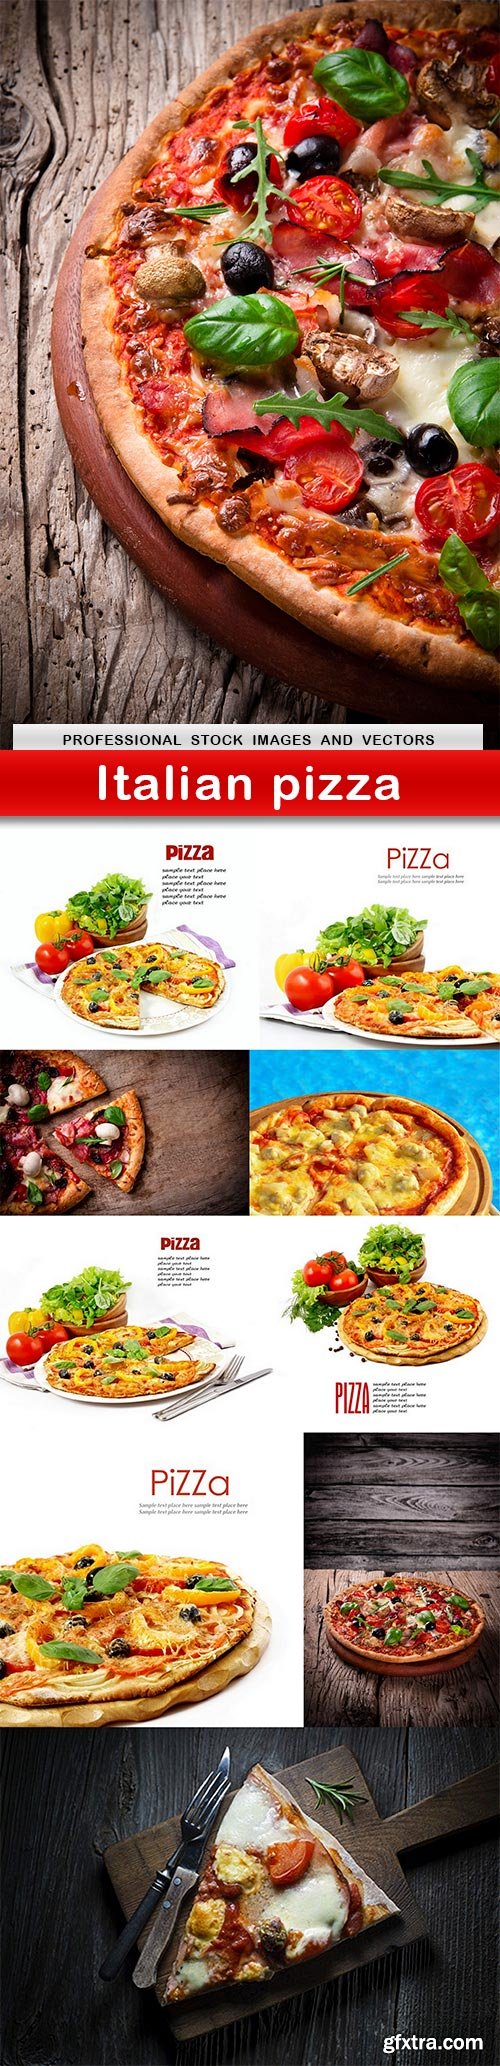 Italian pizza - 10 UHQ JPEG